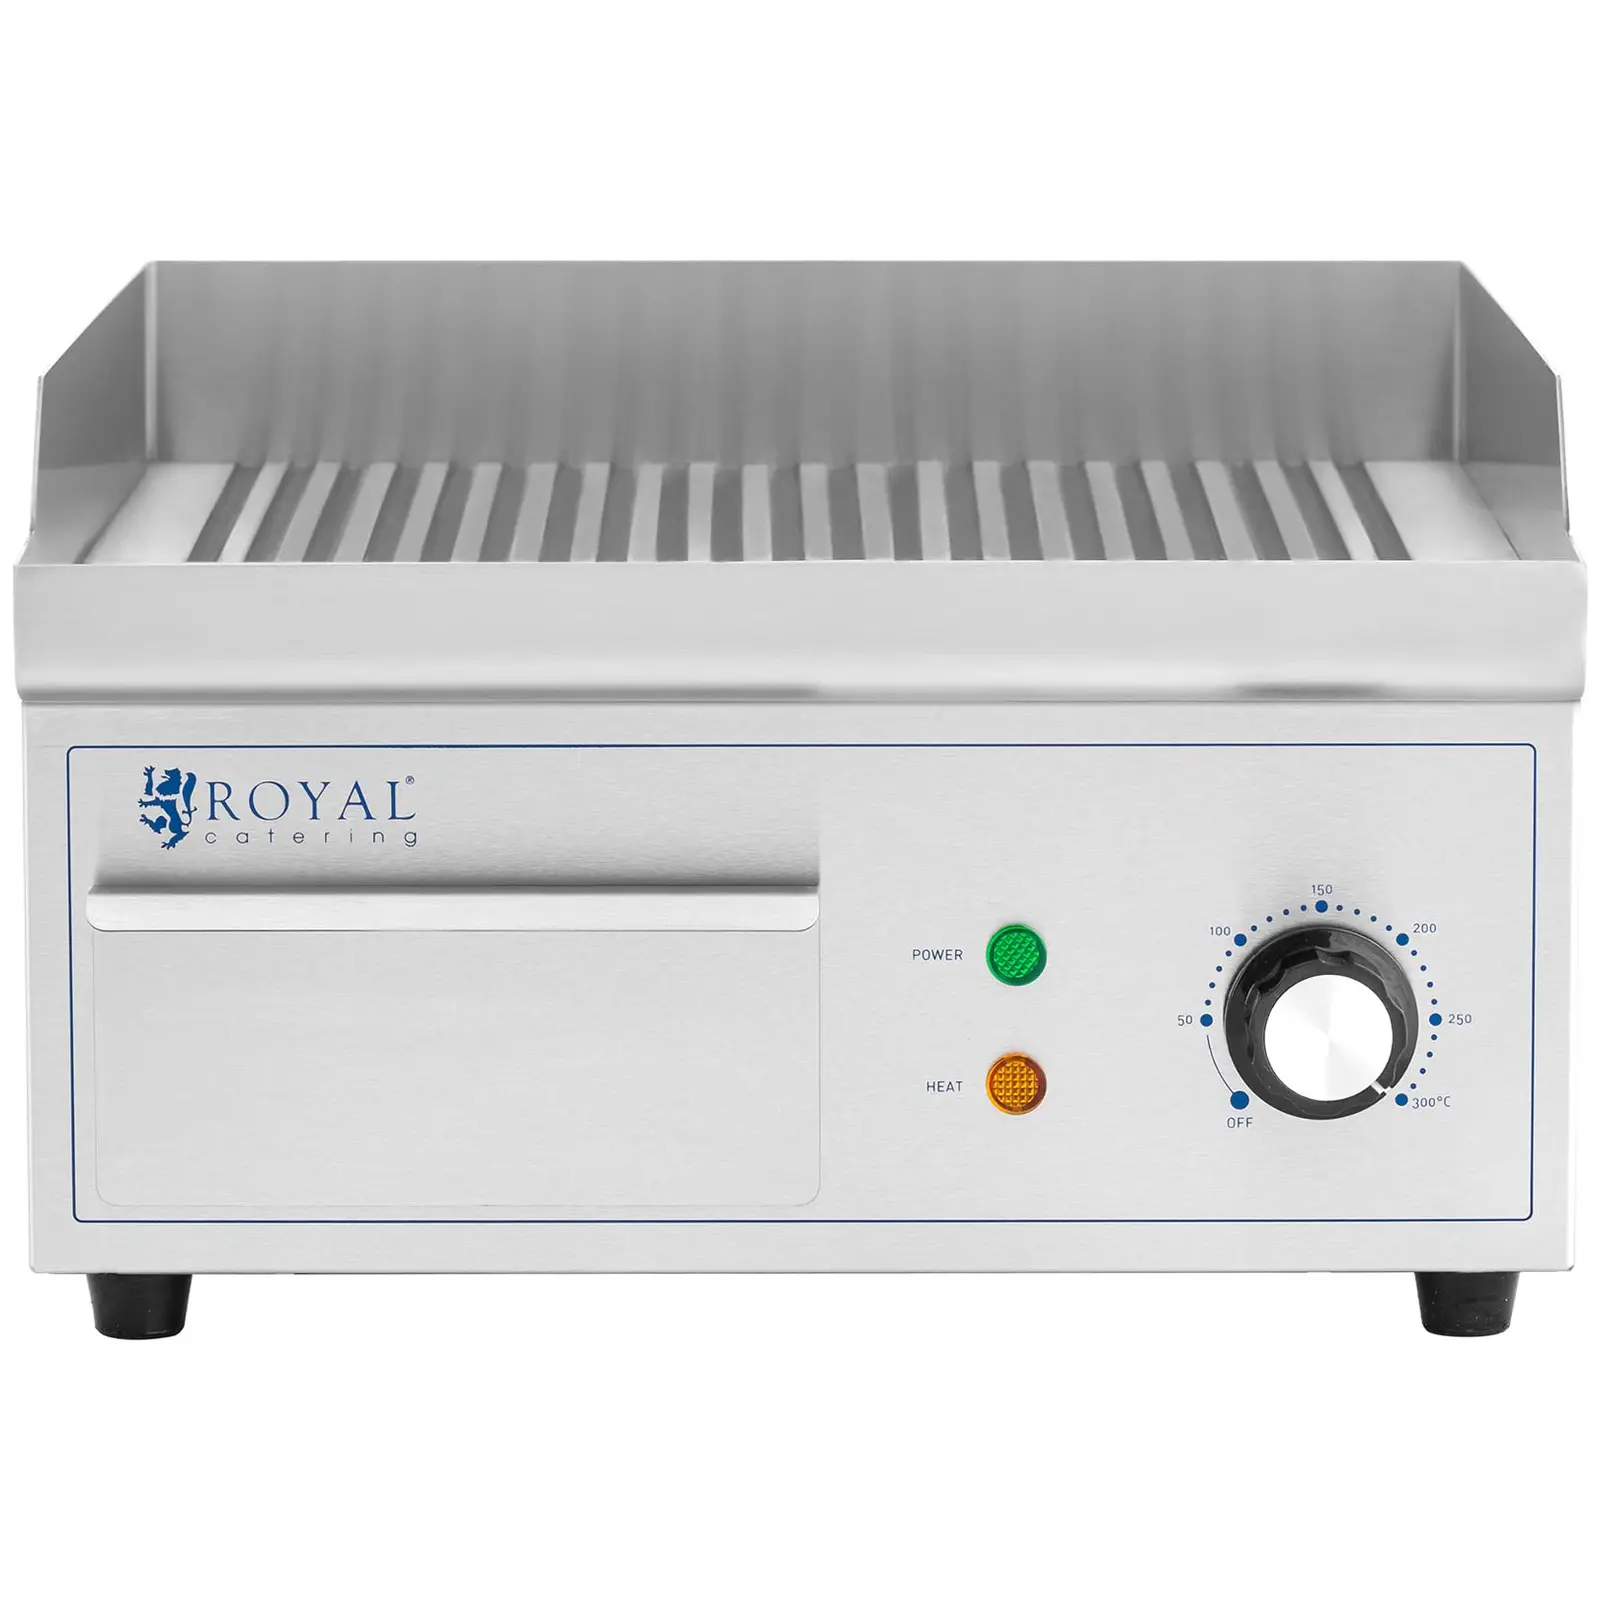 Plită electrică pentru grătar - 380 x 330 mm - royal catering - 1 - 2.000 W